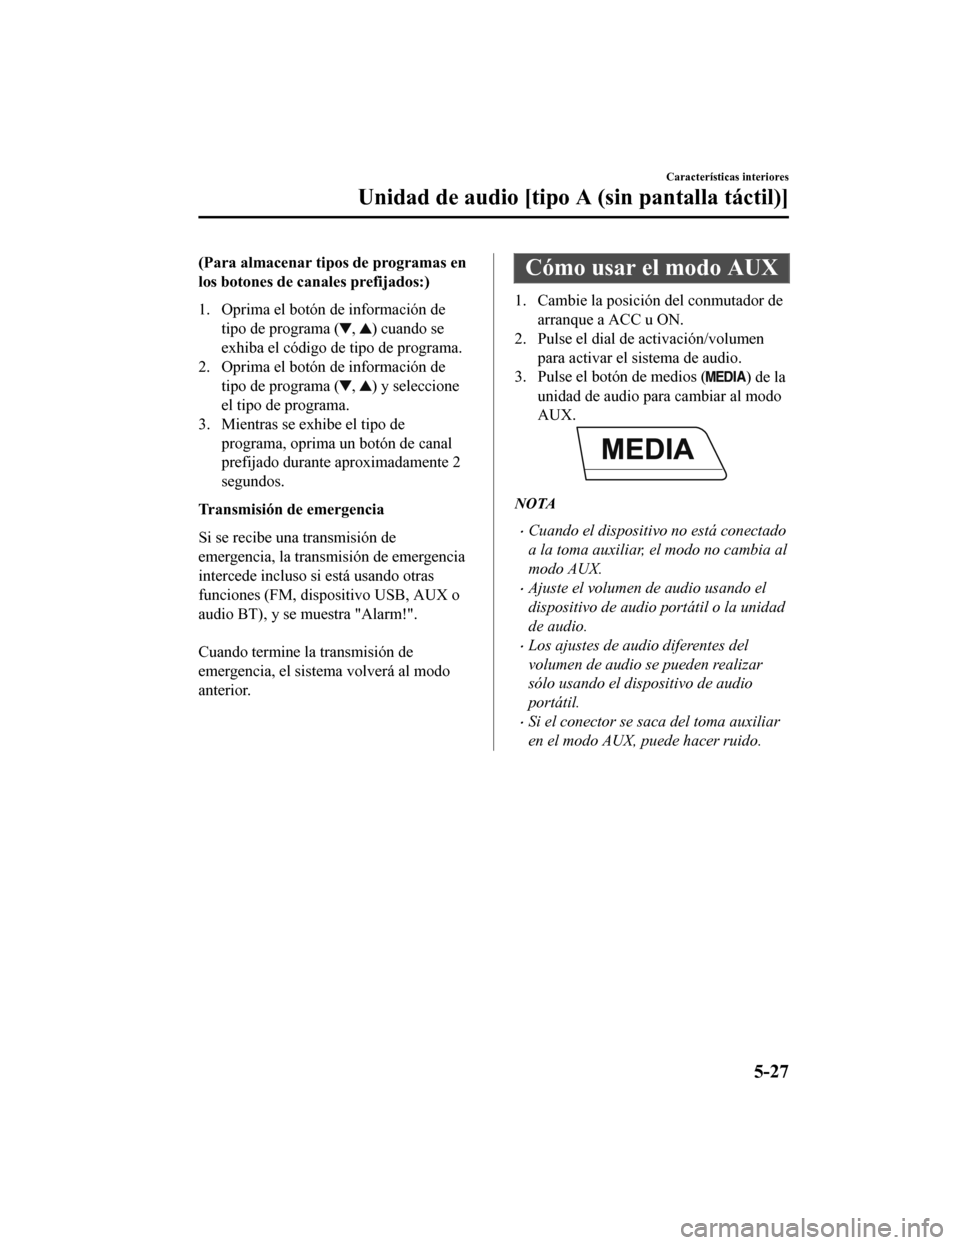 MAZDA MODEL CX-5 2020  Manual del propietario (in Spanish) (Para almacenar tipos de programas en
los botones de canales prefijados:)
1. Oprima el botón de información detipo de programa (
, ) cuando se
exhiba el código de tipo de programa.
2. Oprima el bot